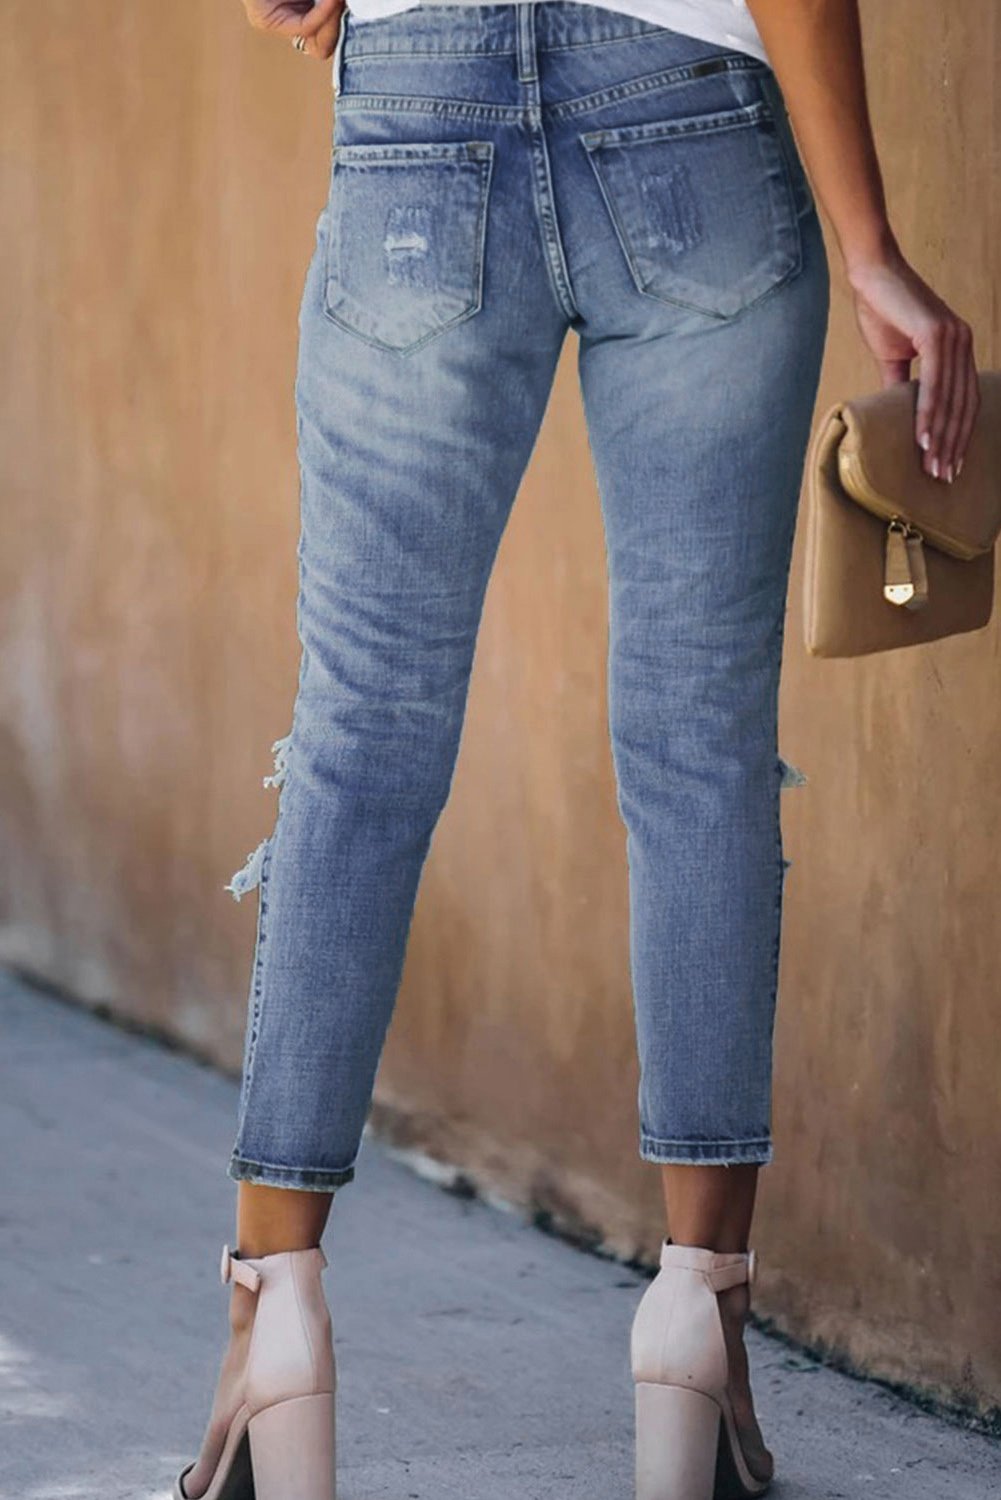 Pantalons Jeans Femme Court Bleu Delave Trous Vieillis